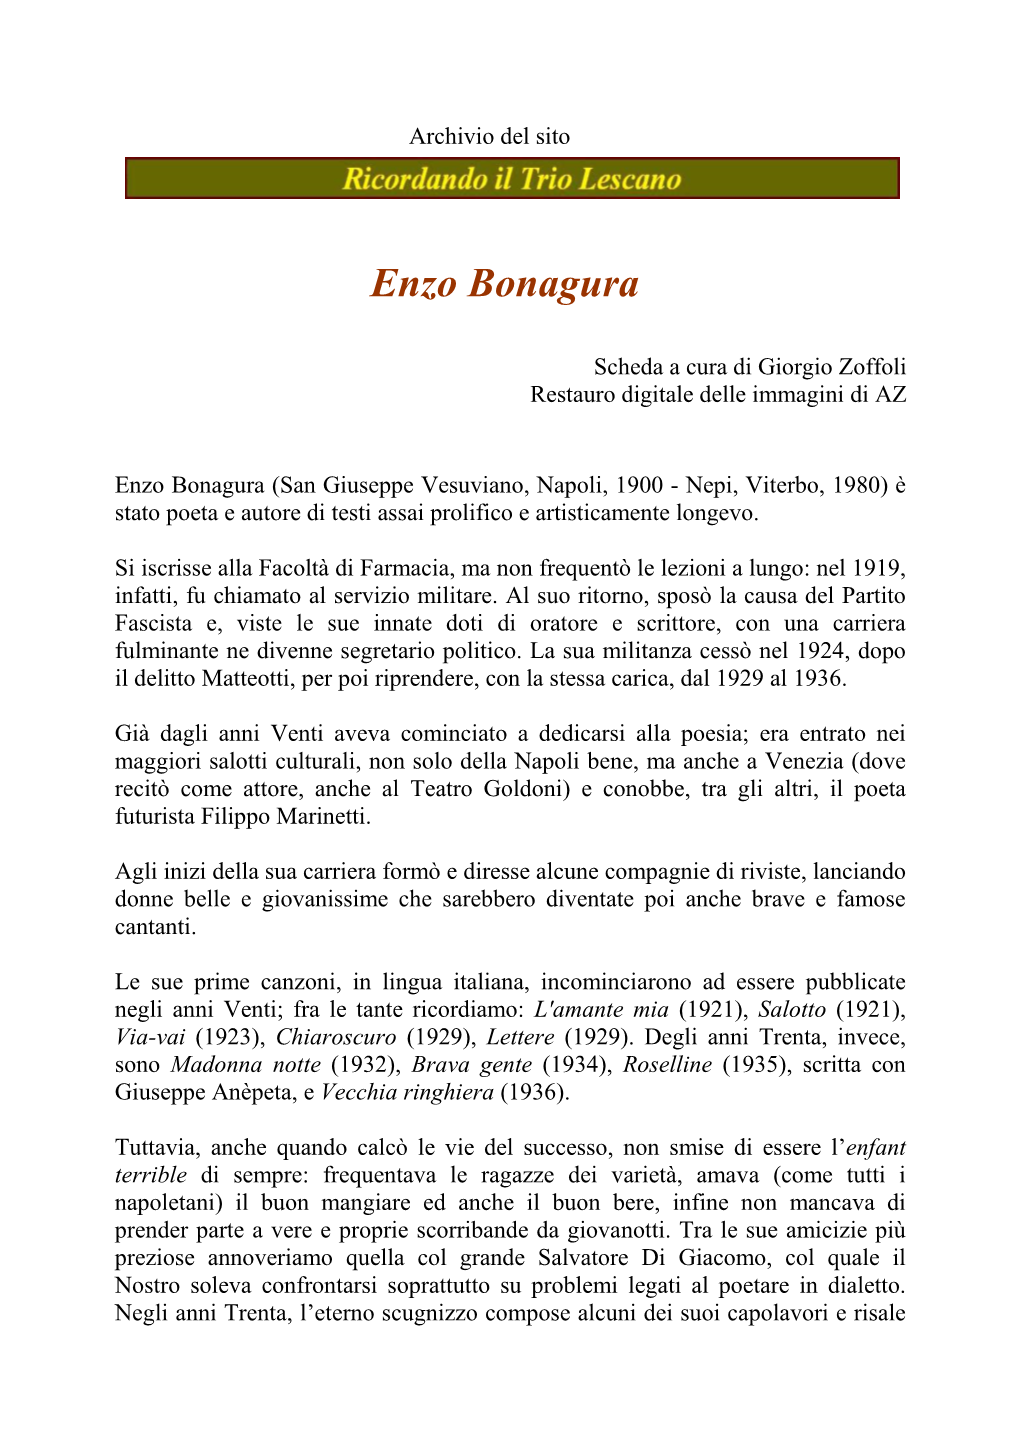 Enzo Bonagura